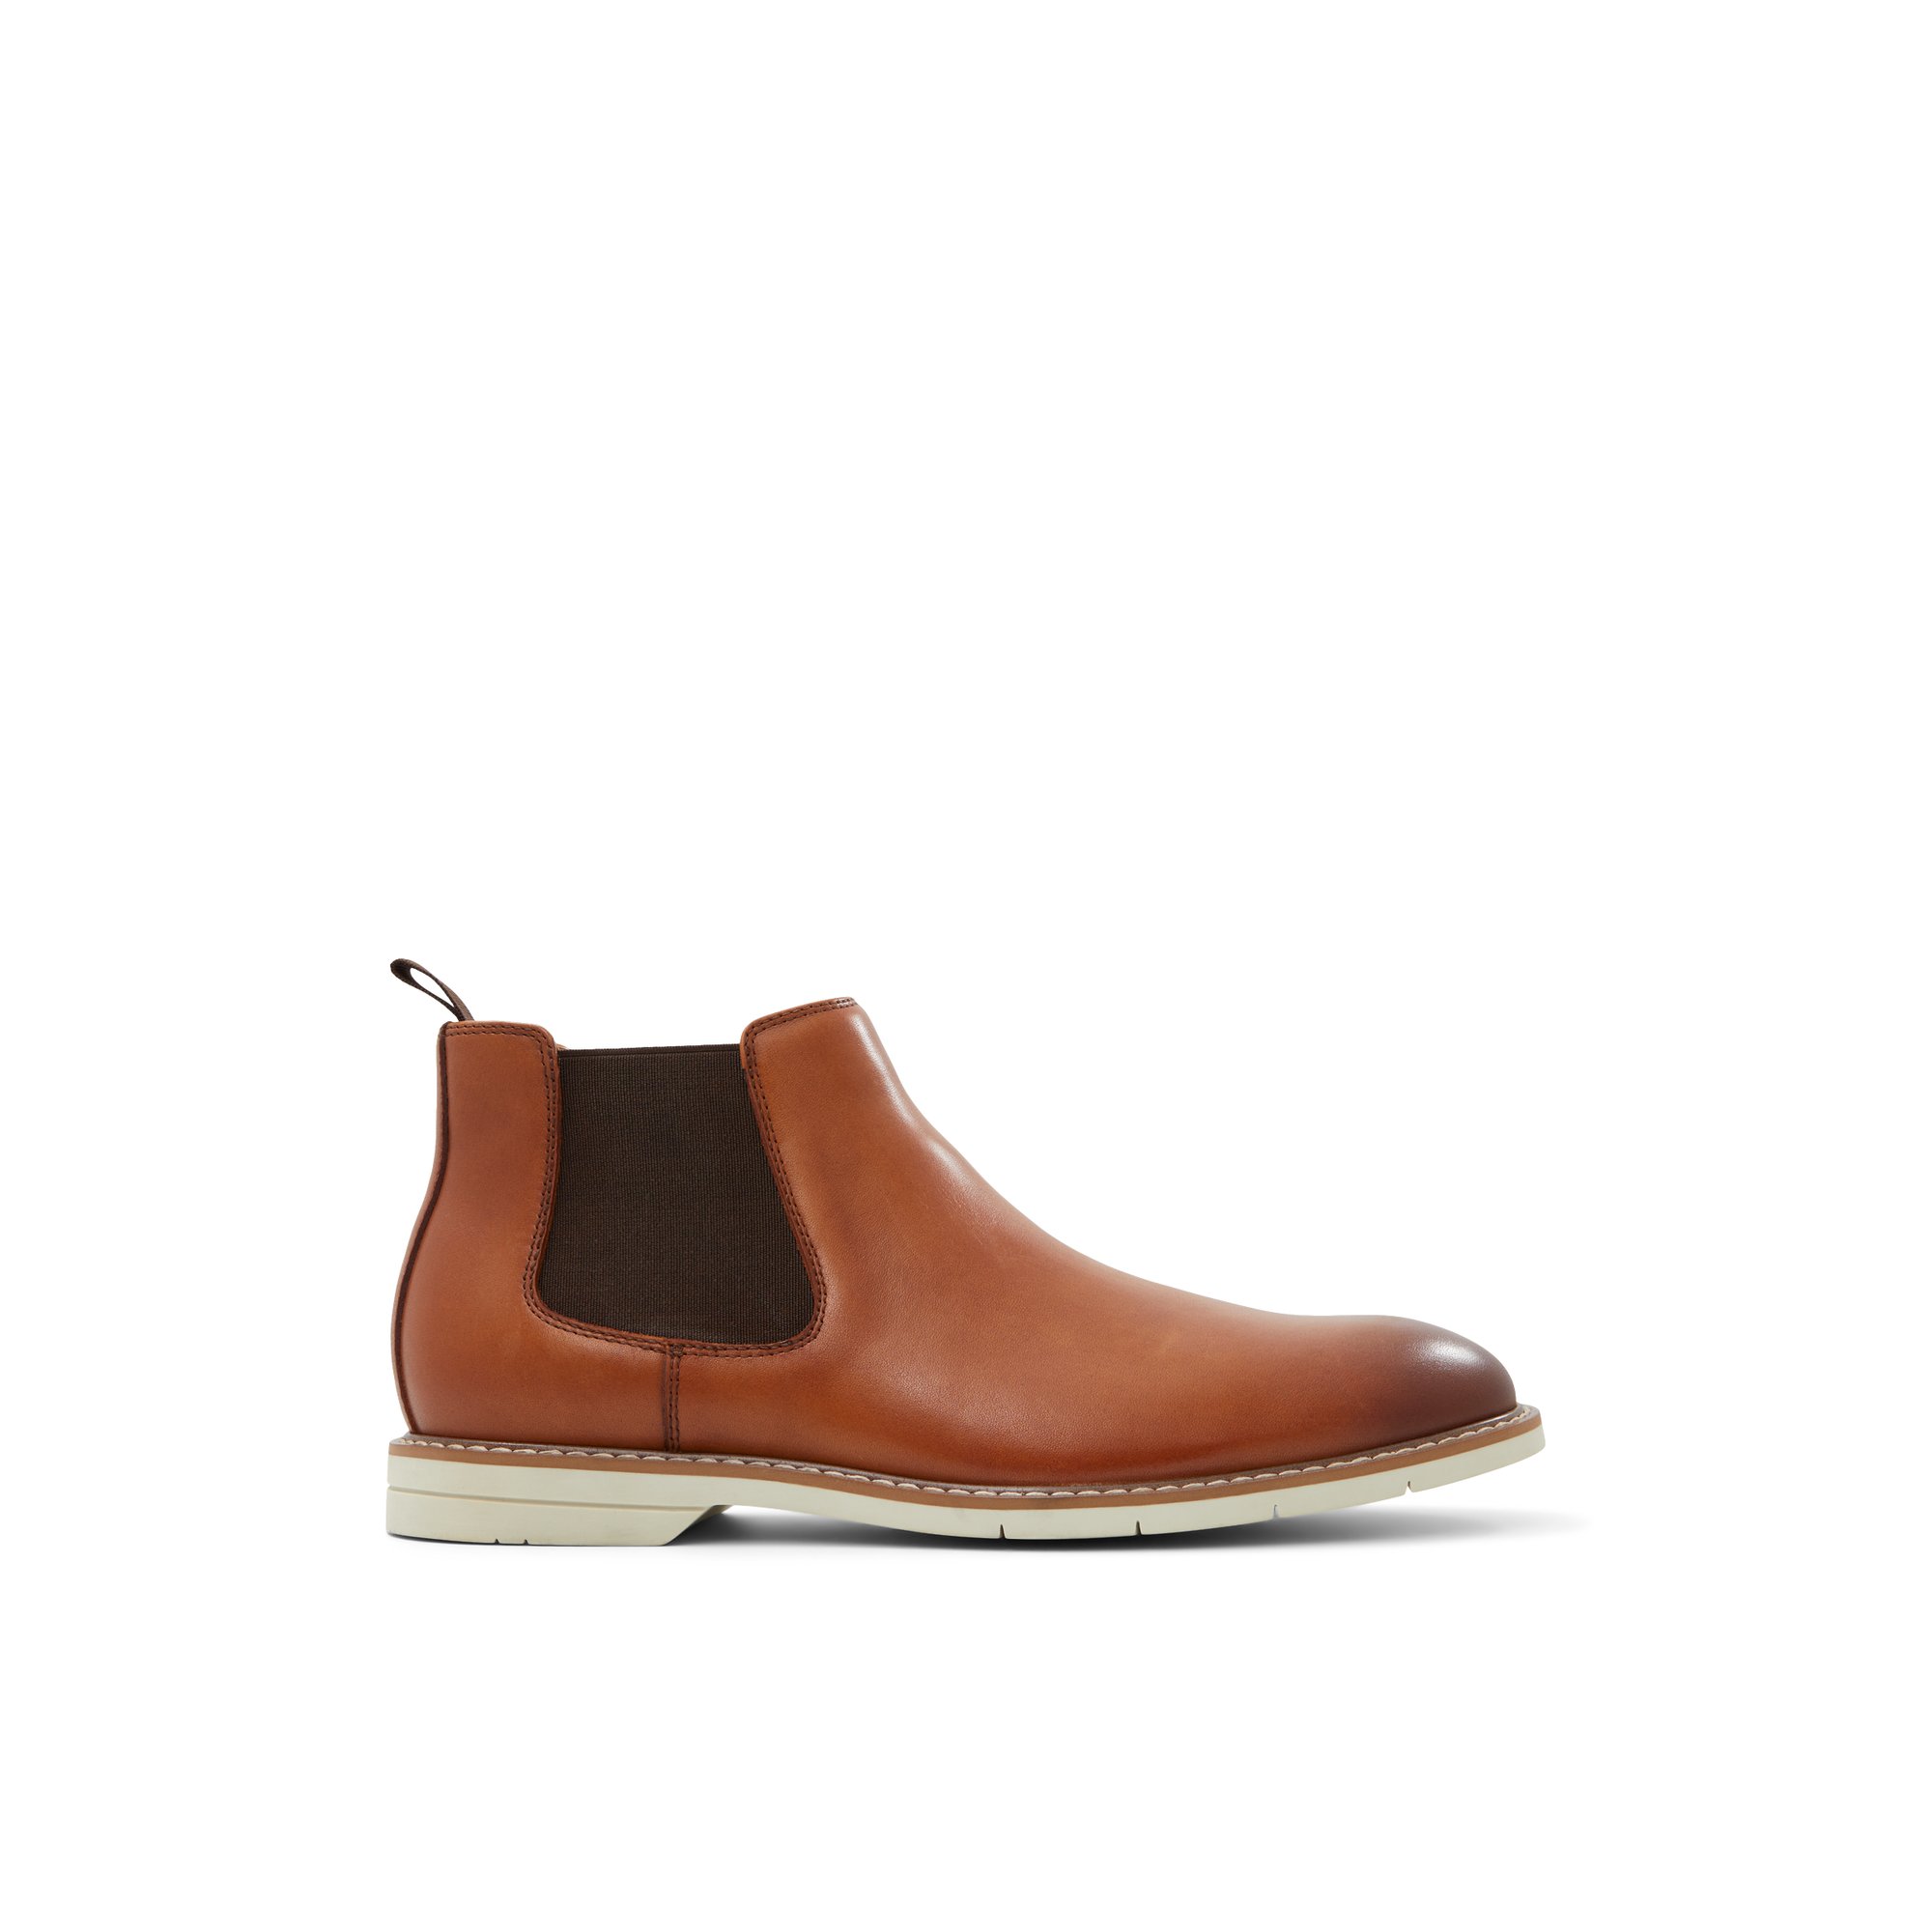 ALDO Darwin - Men's Casual Boot - Brown